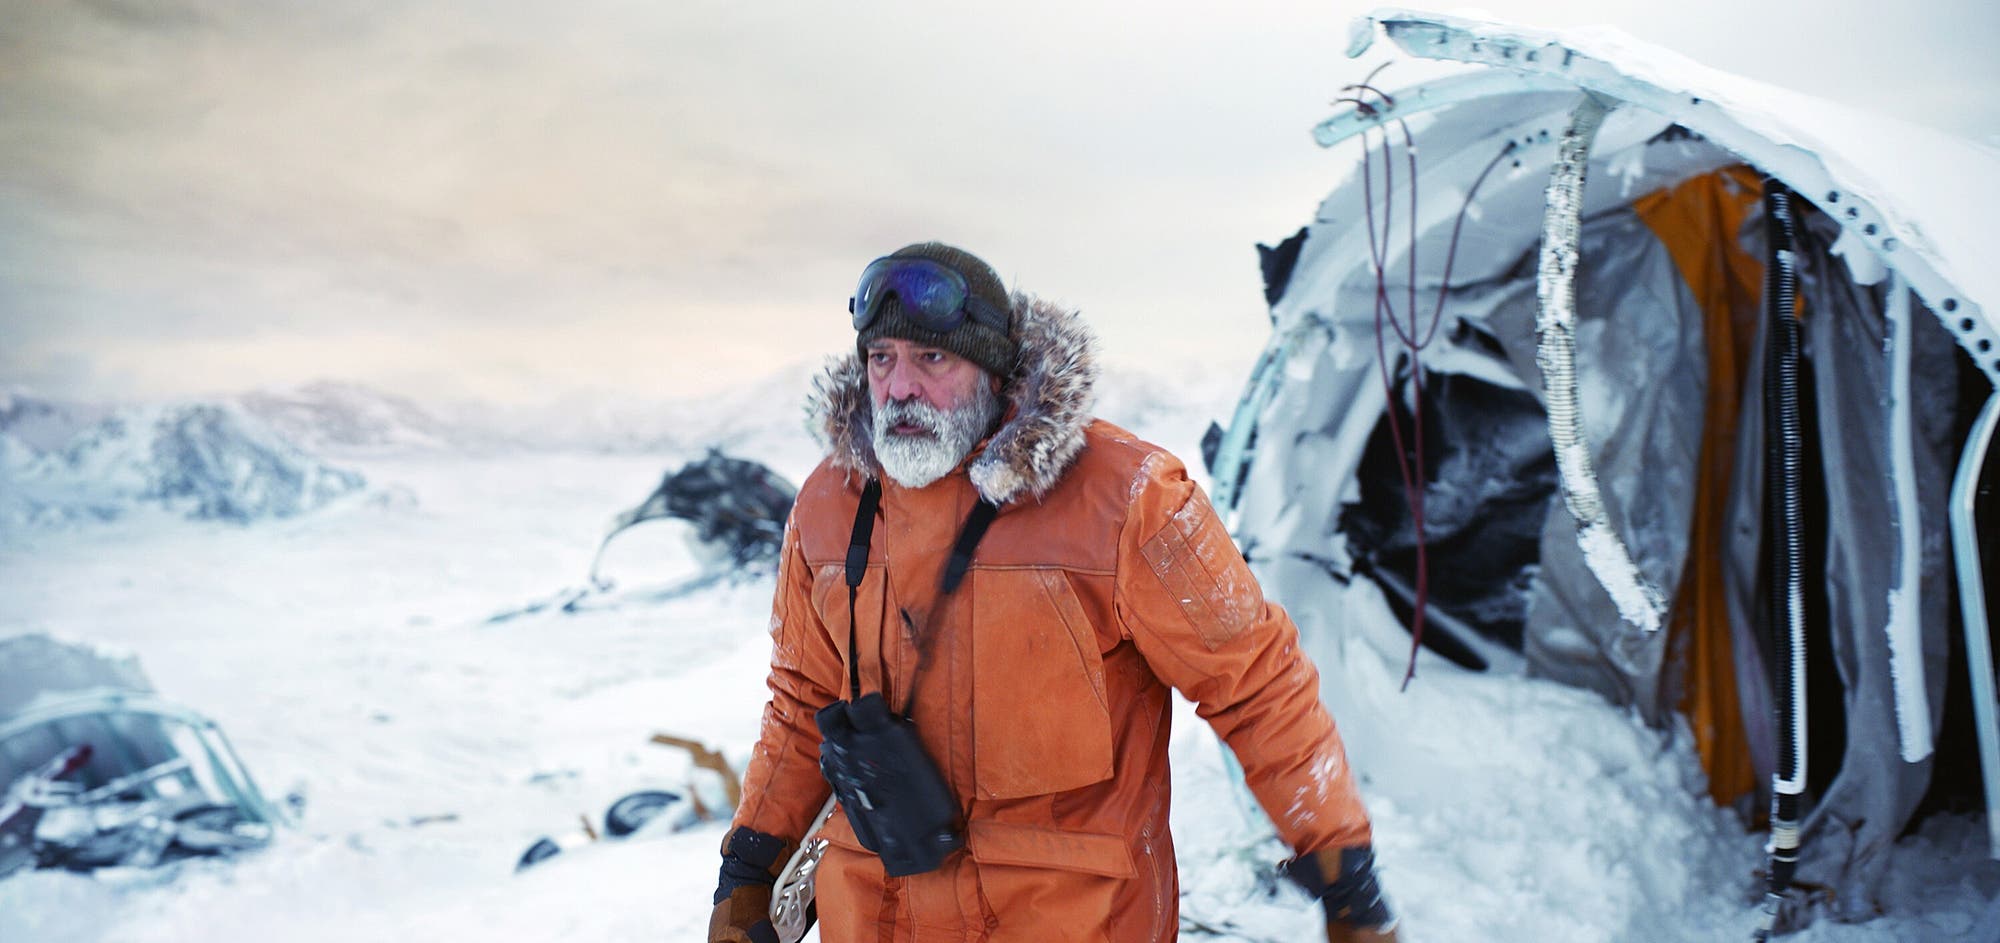 Während alle anderen Wissenschaftler und Mitarbeiter für das Ende der Welt zu ihren Familien heimkehren, verbleibt Augustine (George Clooney) allein auf der Forschungsstation mitten in der Arktis.